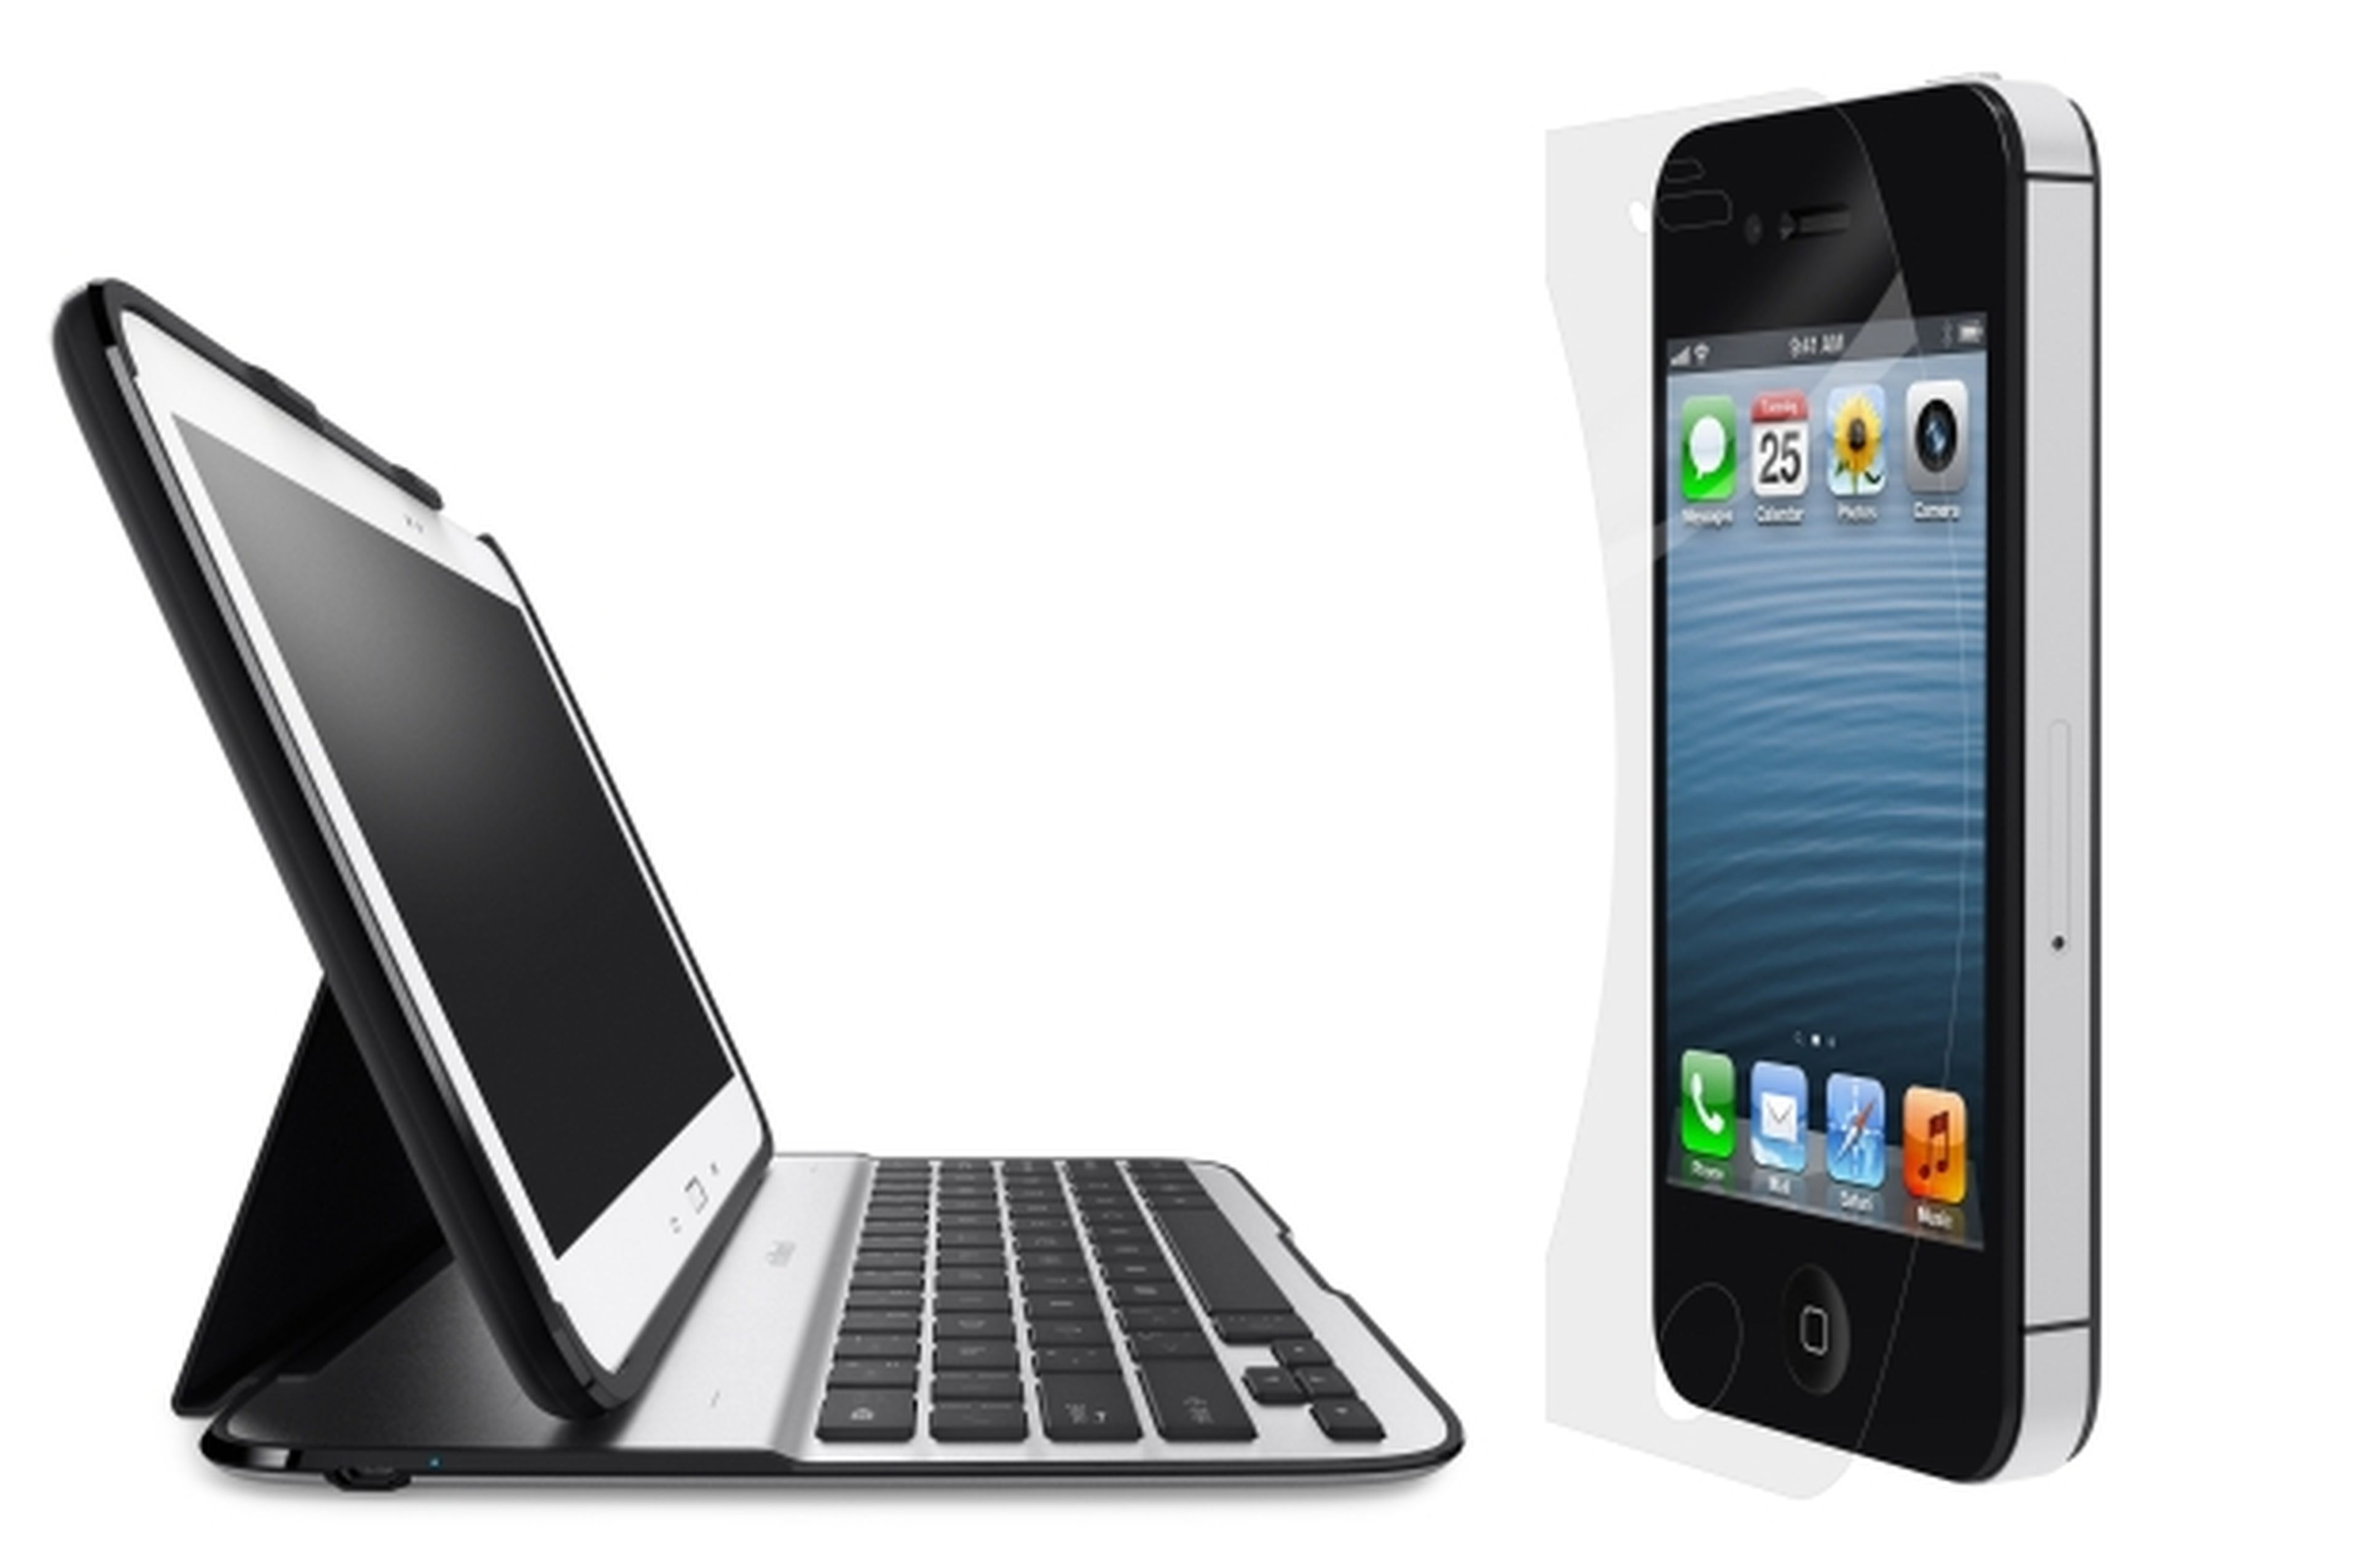 Novedades de Belkin para IFA 2013: protectores de pantalla, teclados para tablets, routers...